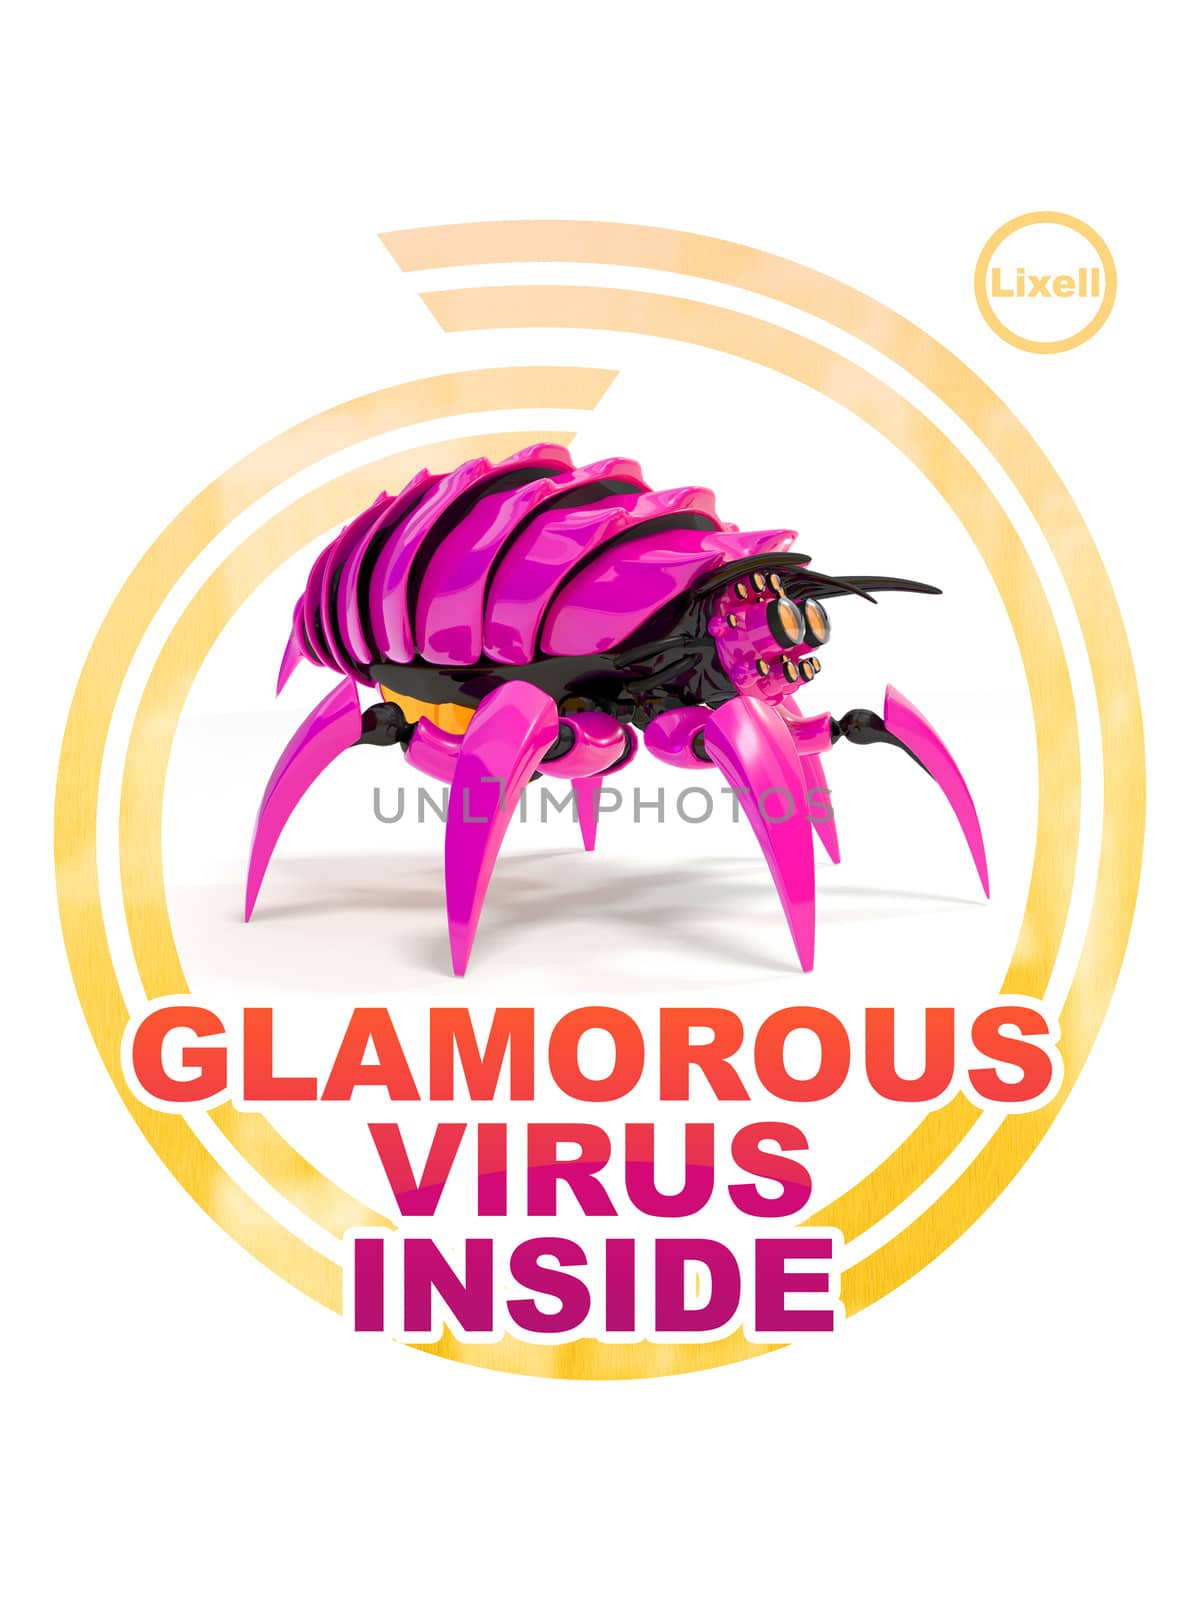 Glamorous virus inside by Lixell